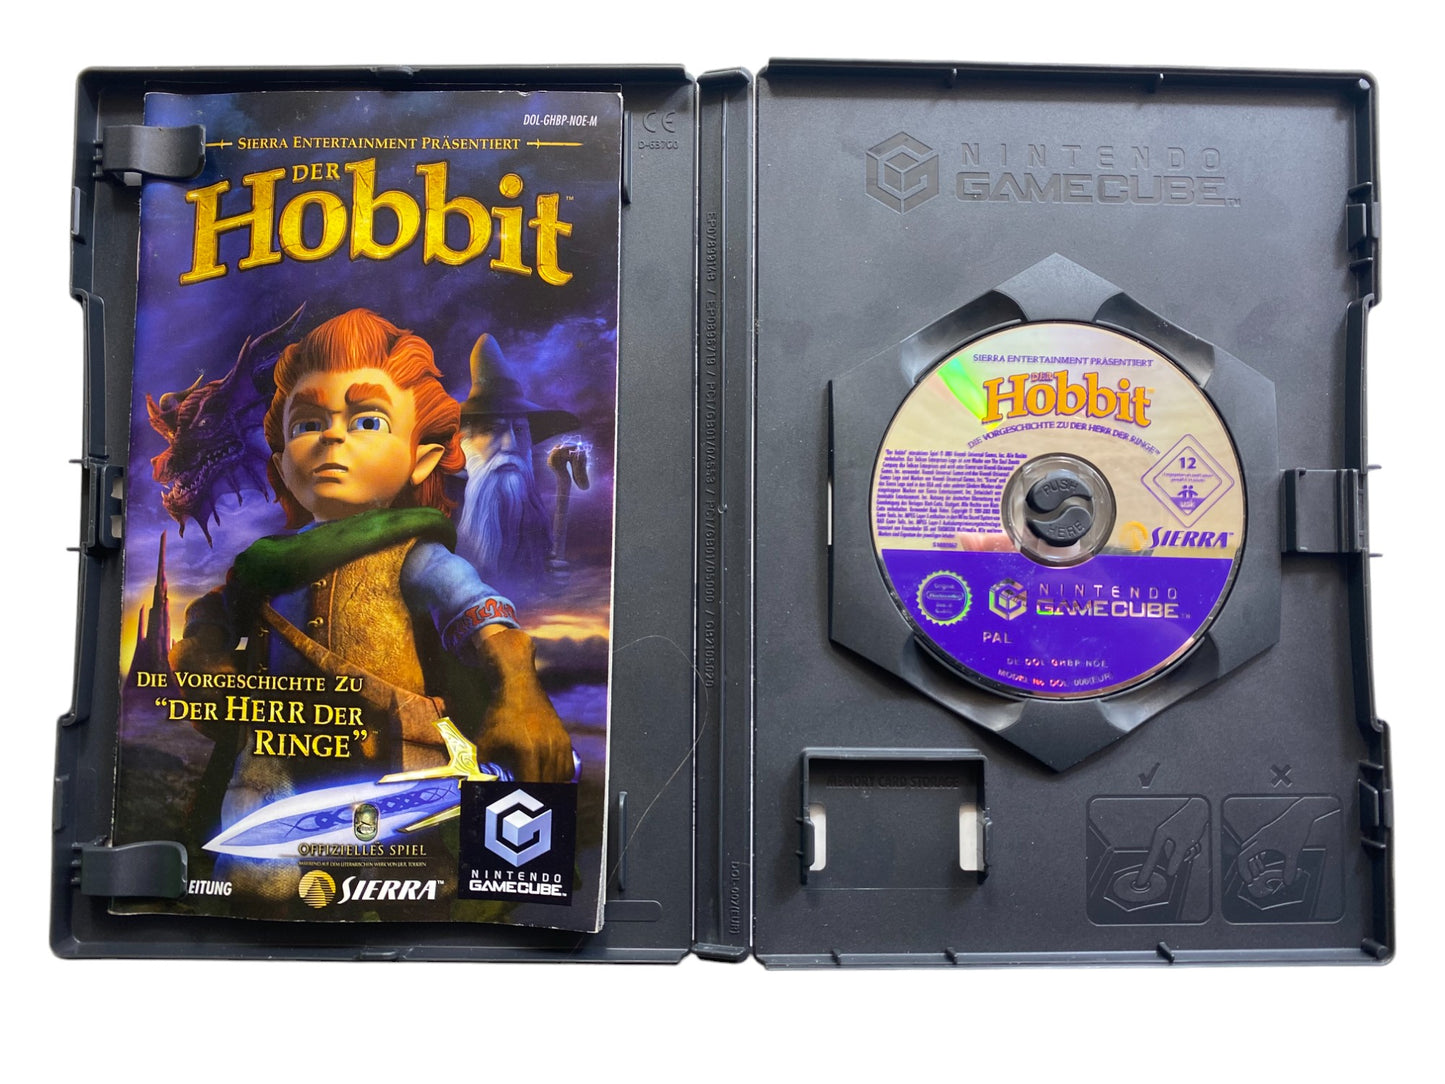 Der Hobbit-Die Vorgeschichte zu "Der Herr der Ringe" - Nintendo GameCube